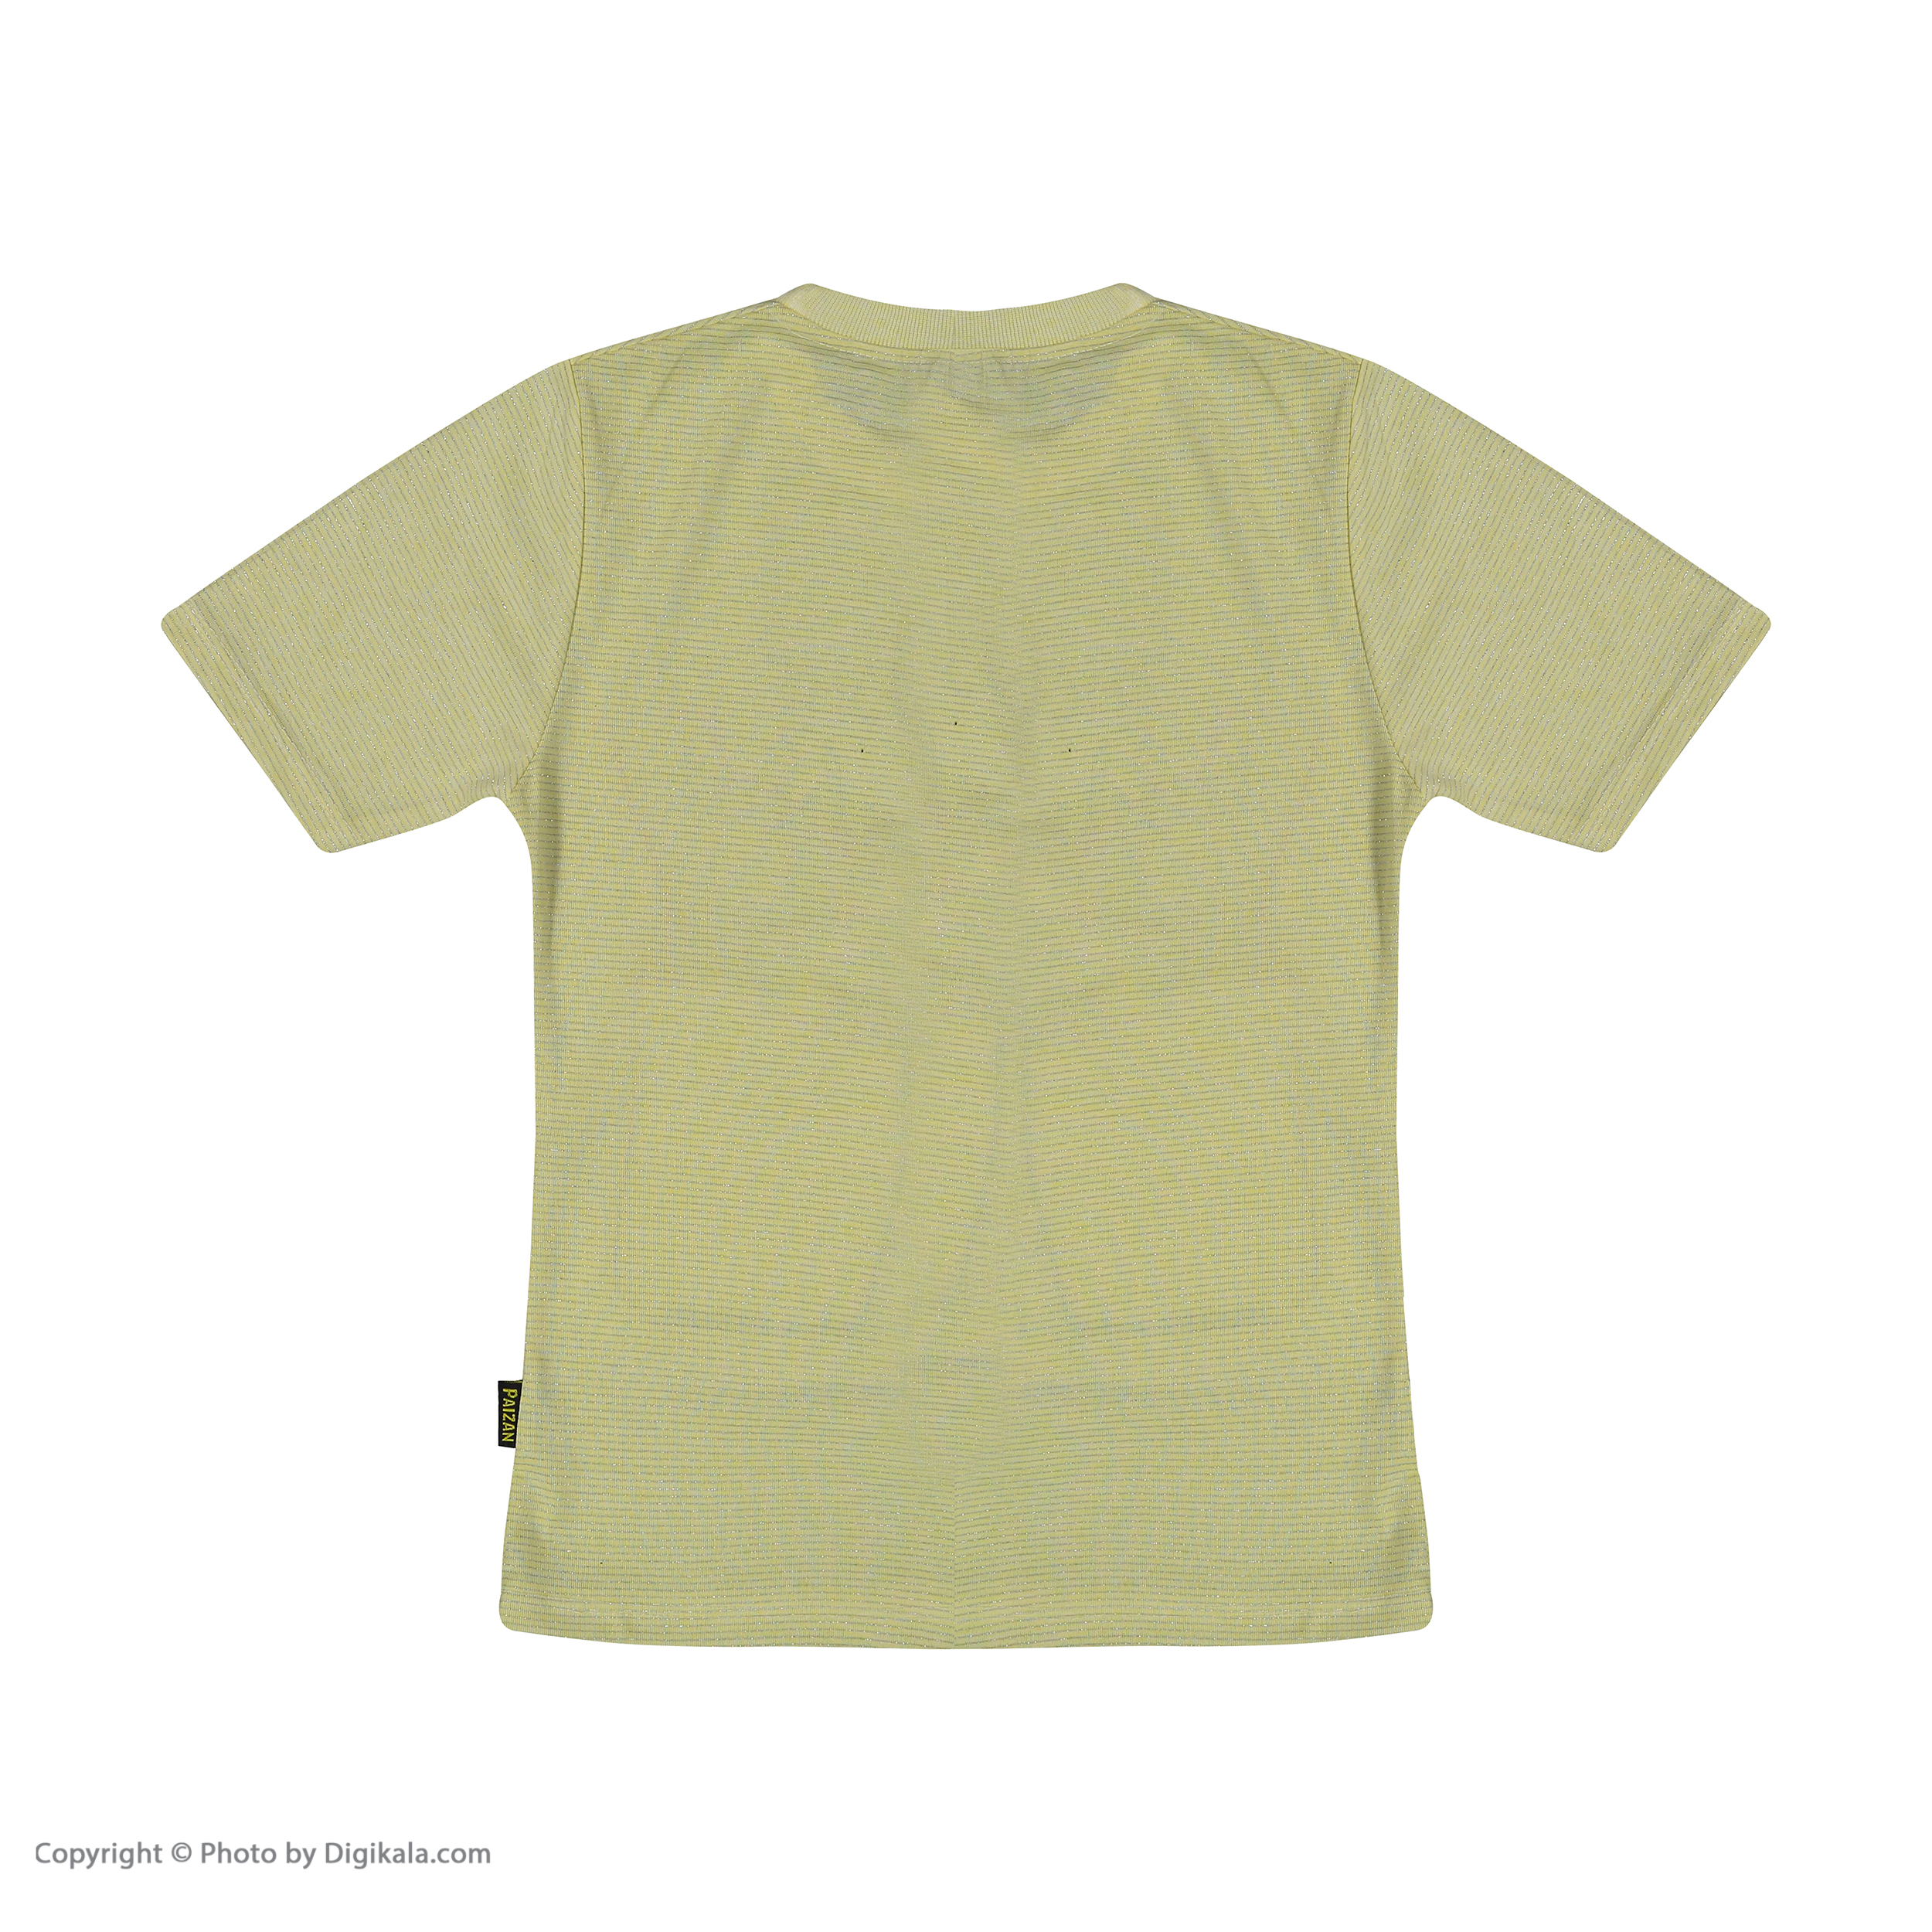 ست تی شرت و شلوارک دخترانه بانالی مدل هیلاری کد 3554 -  - 6